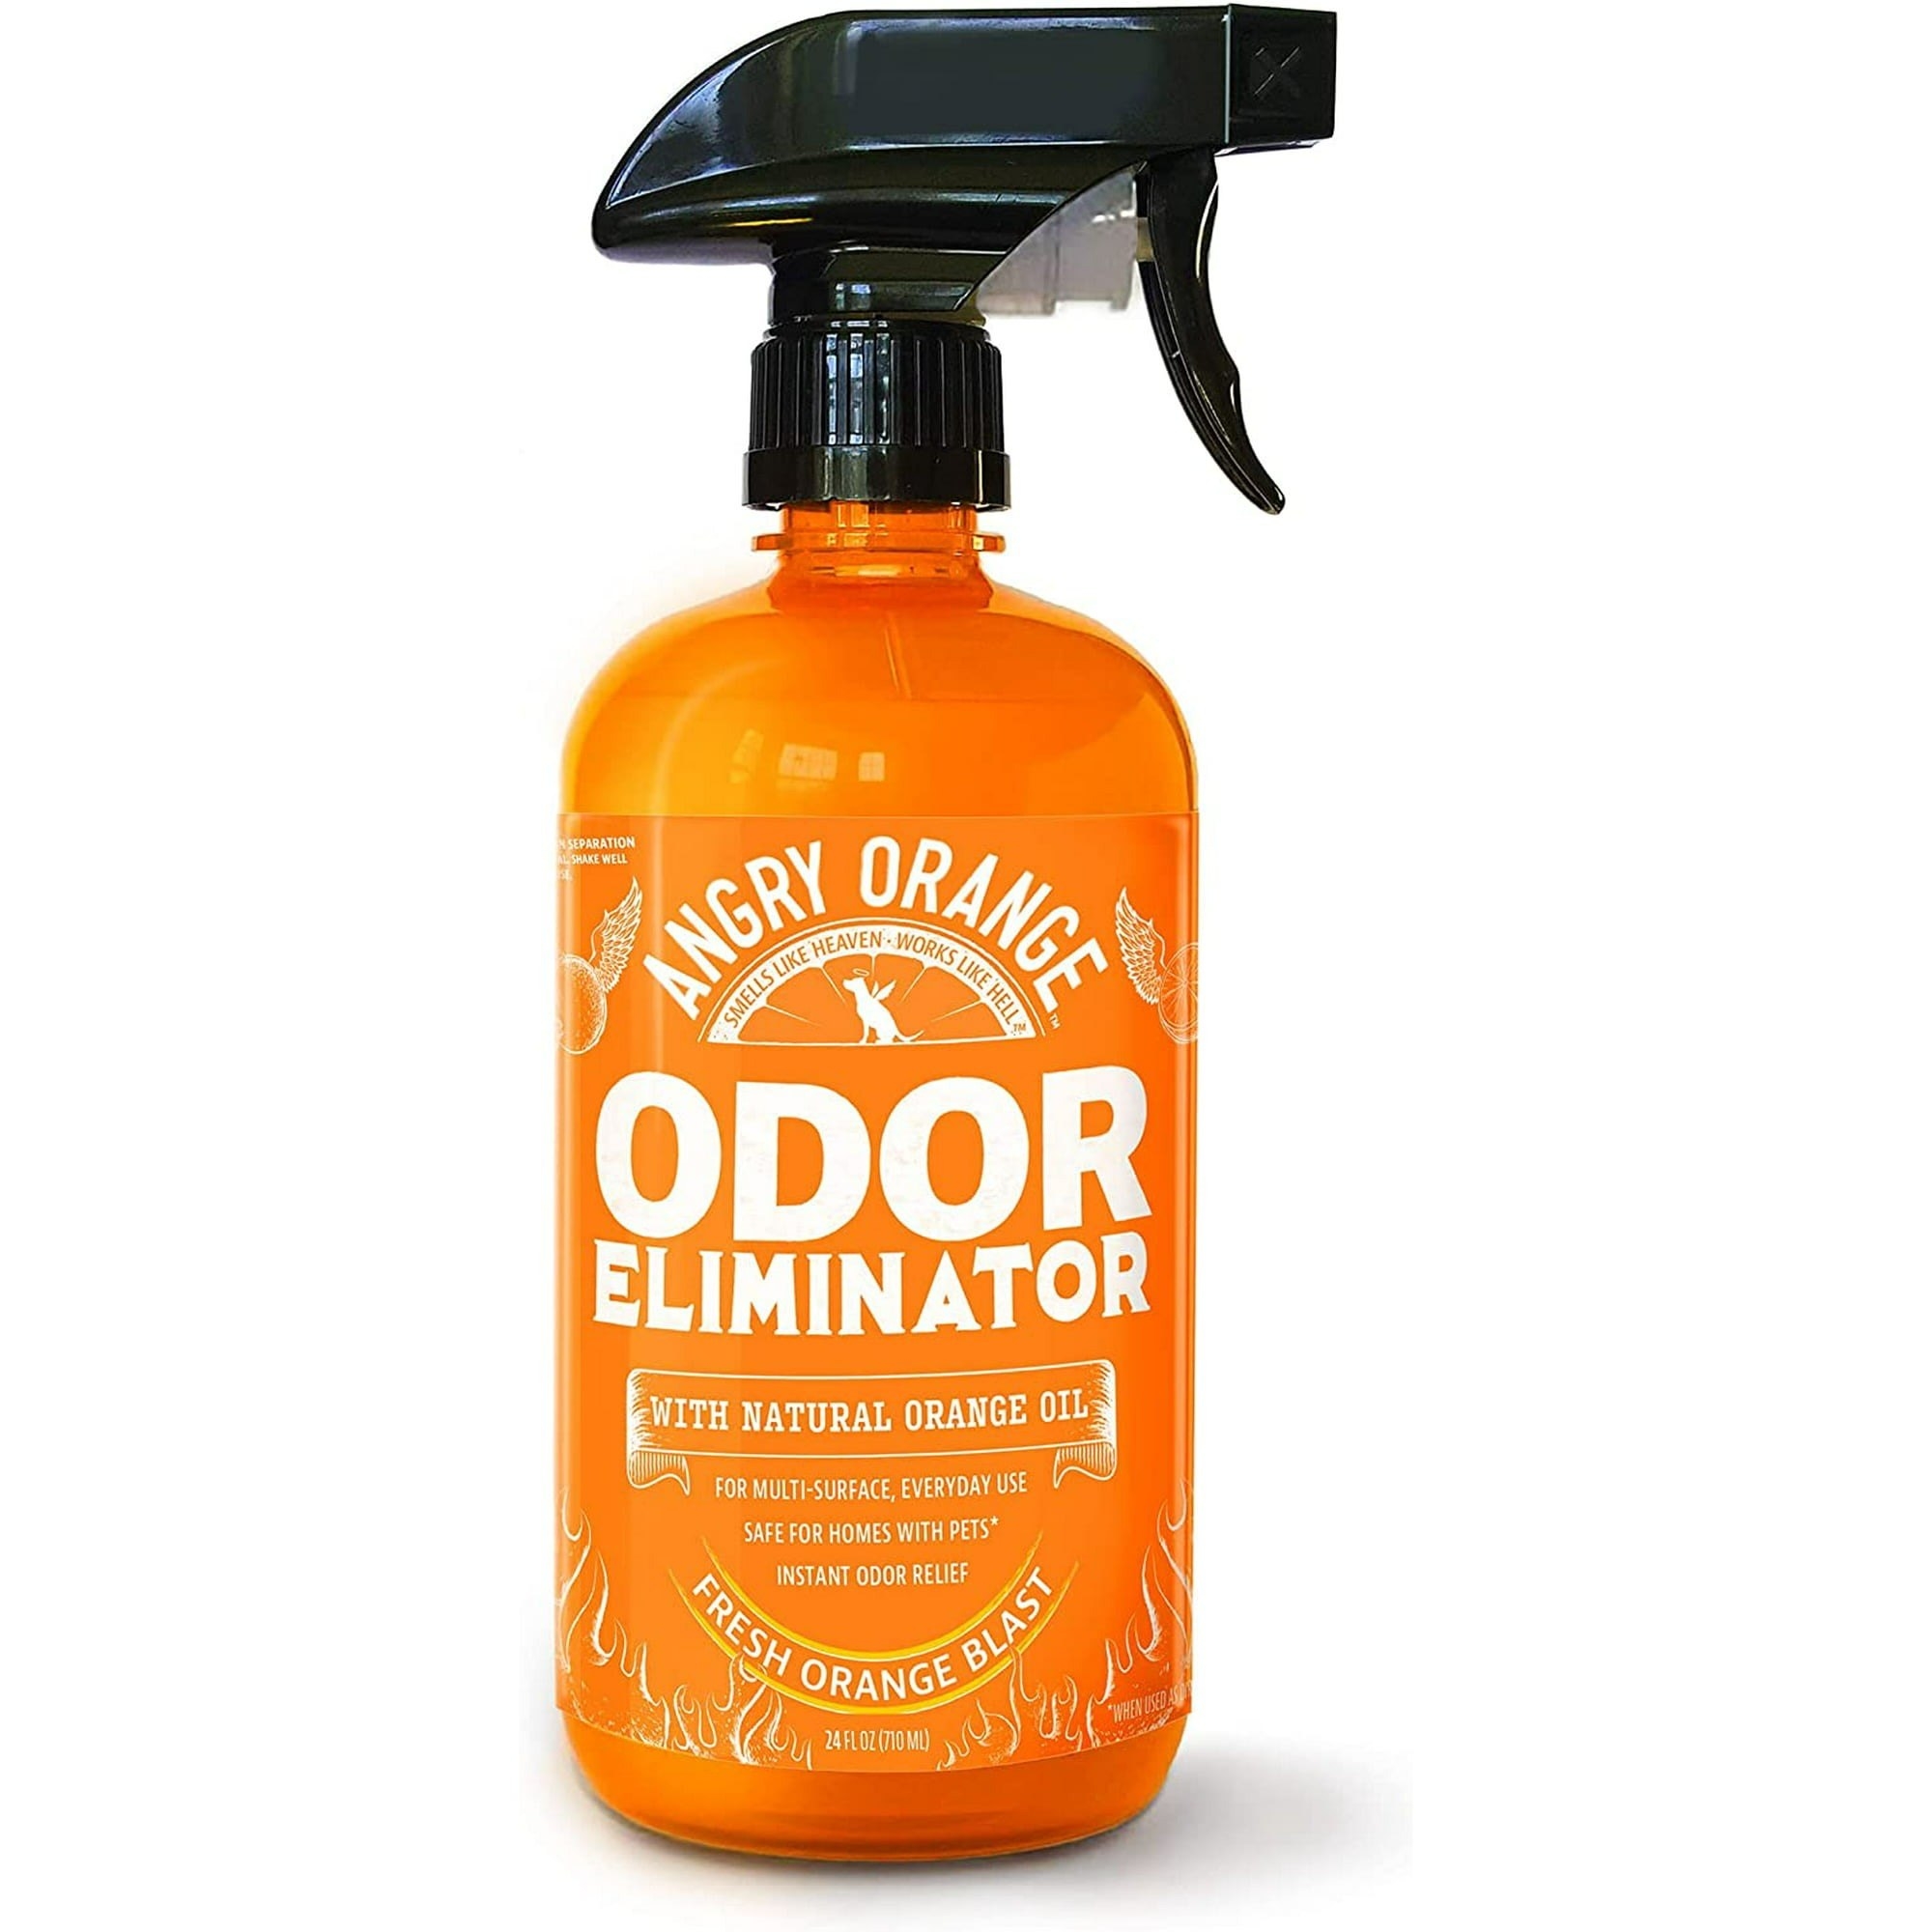 the odor eliminator bottle